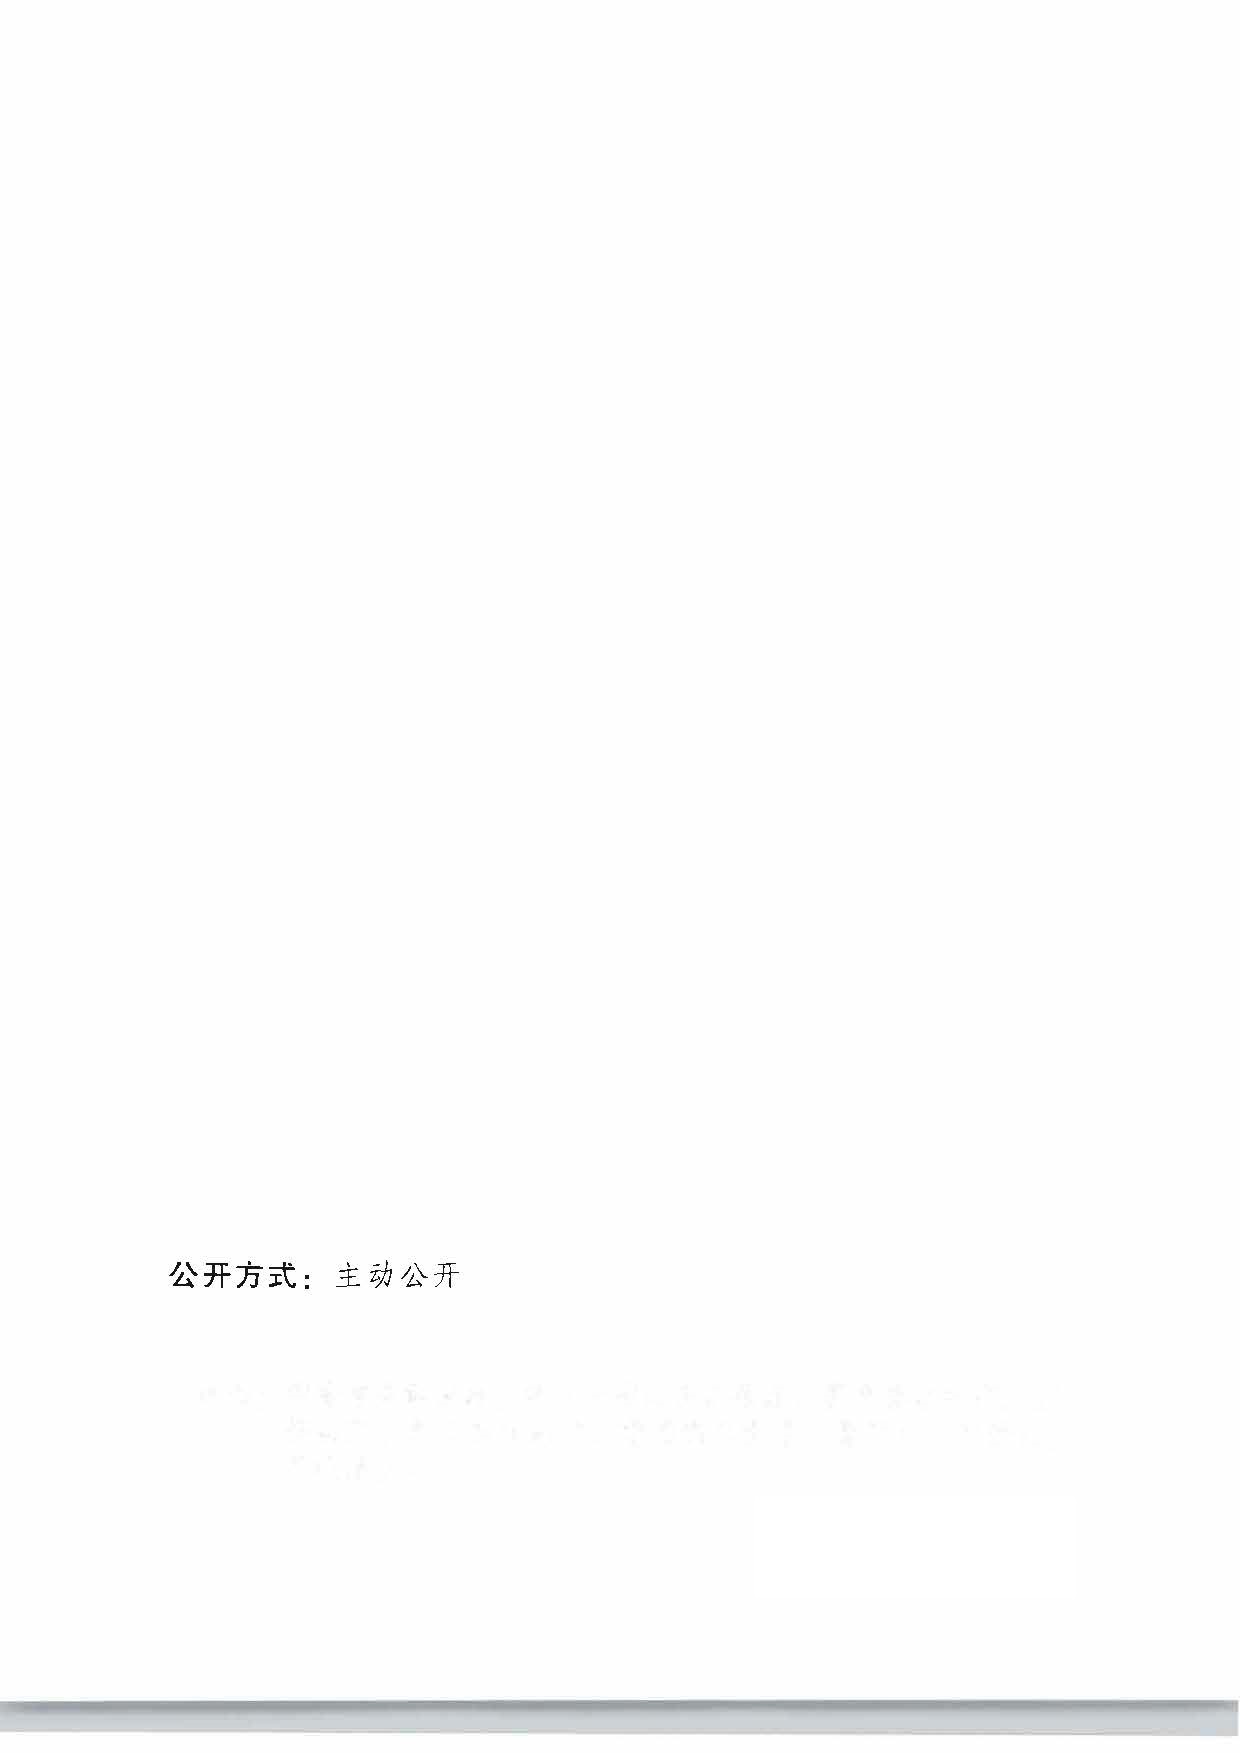 广东省人民政府关于公布第四批广东省历史文化街区名单的通知_页面_4_页面_4.jpg